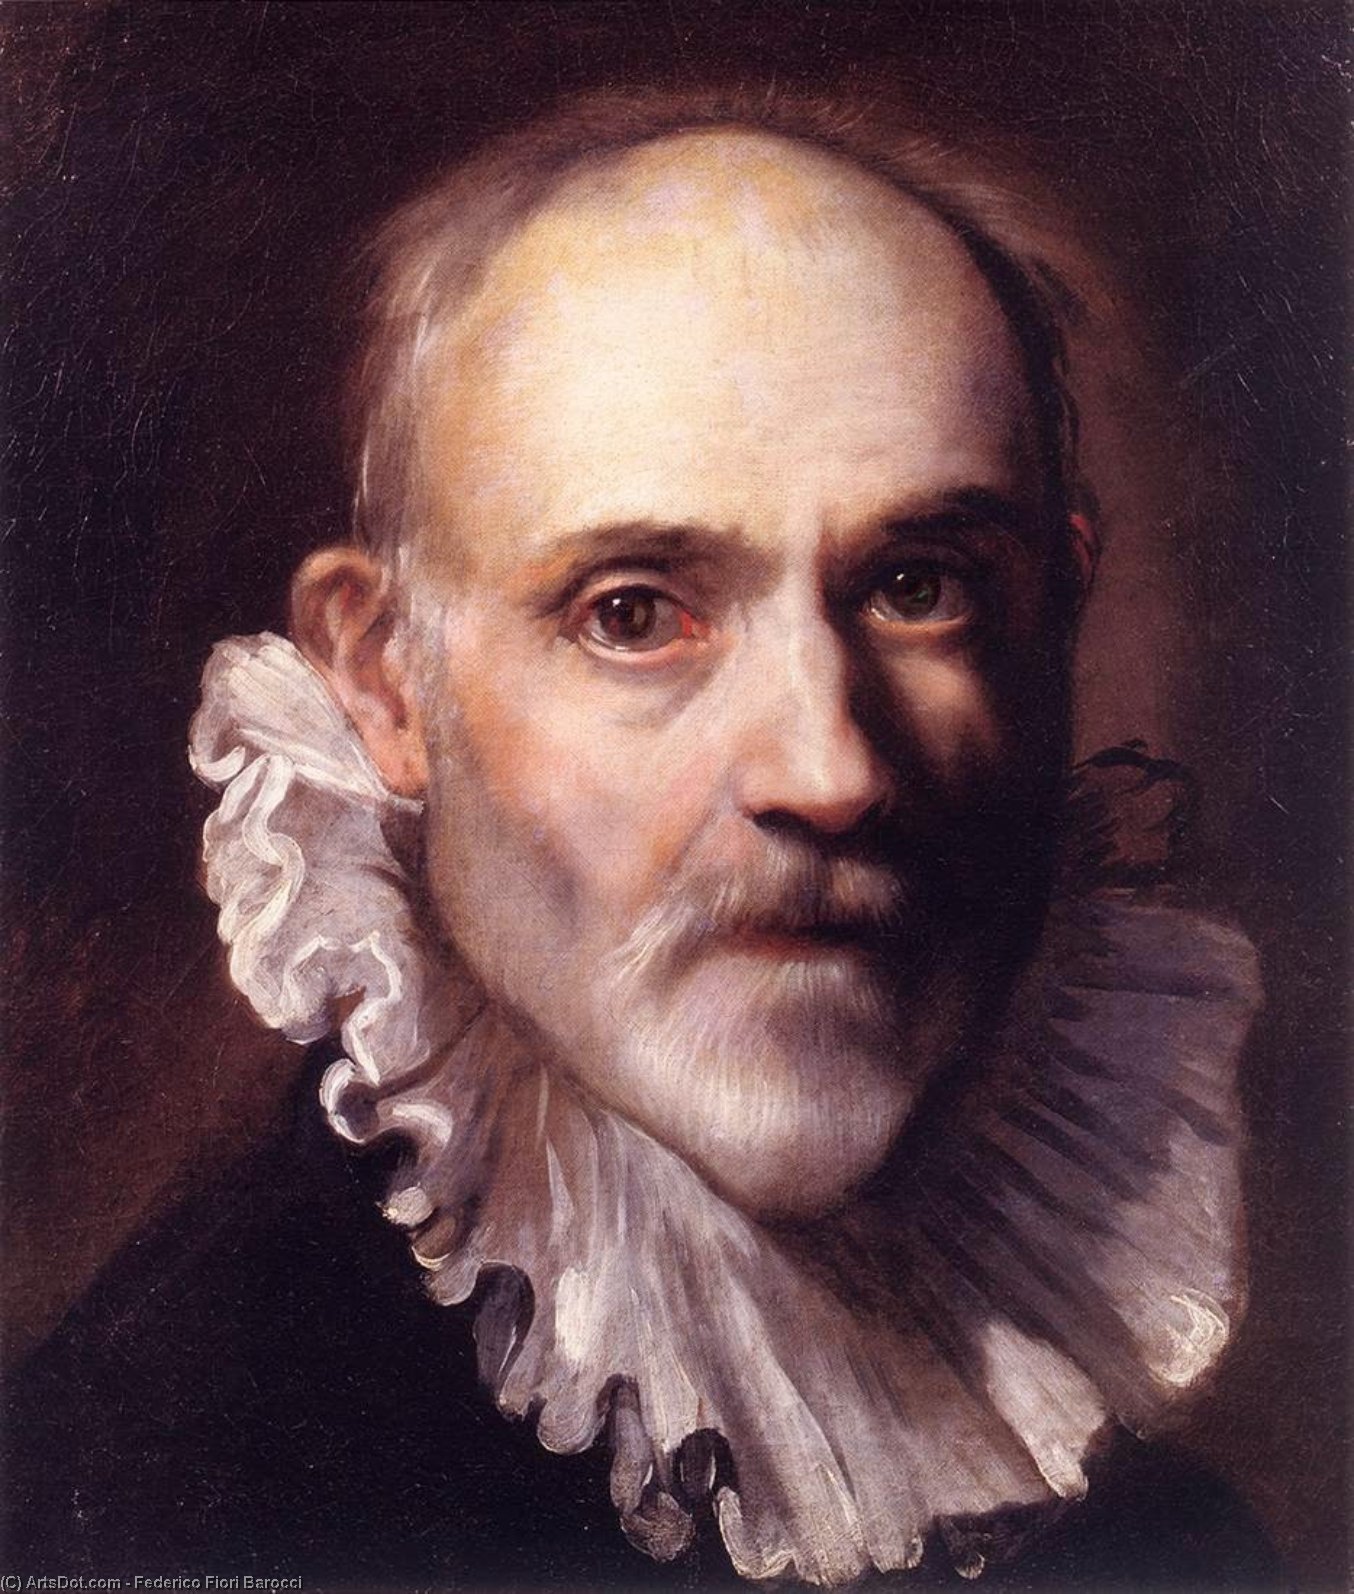 WikiOO.org - Encyclopedia of Fine Arts - Malba, Artwork Federico Fiori Barocci - Self-Portrait